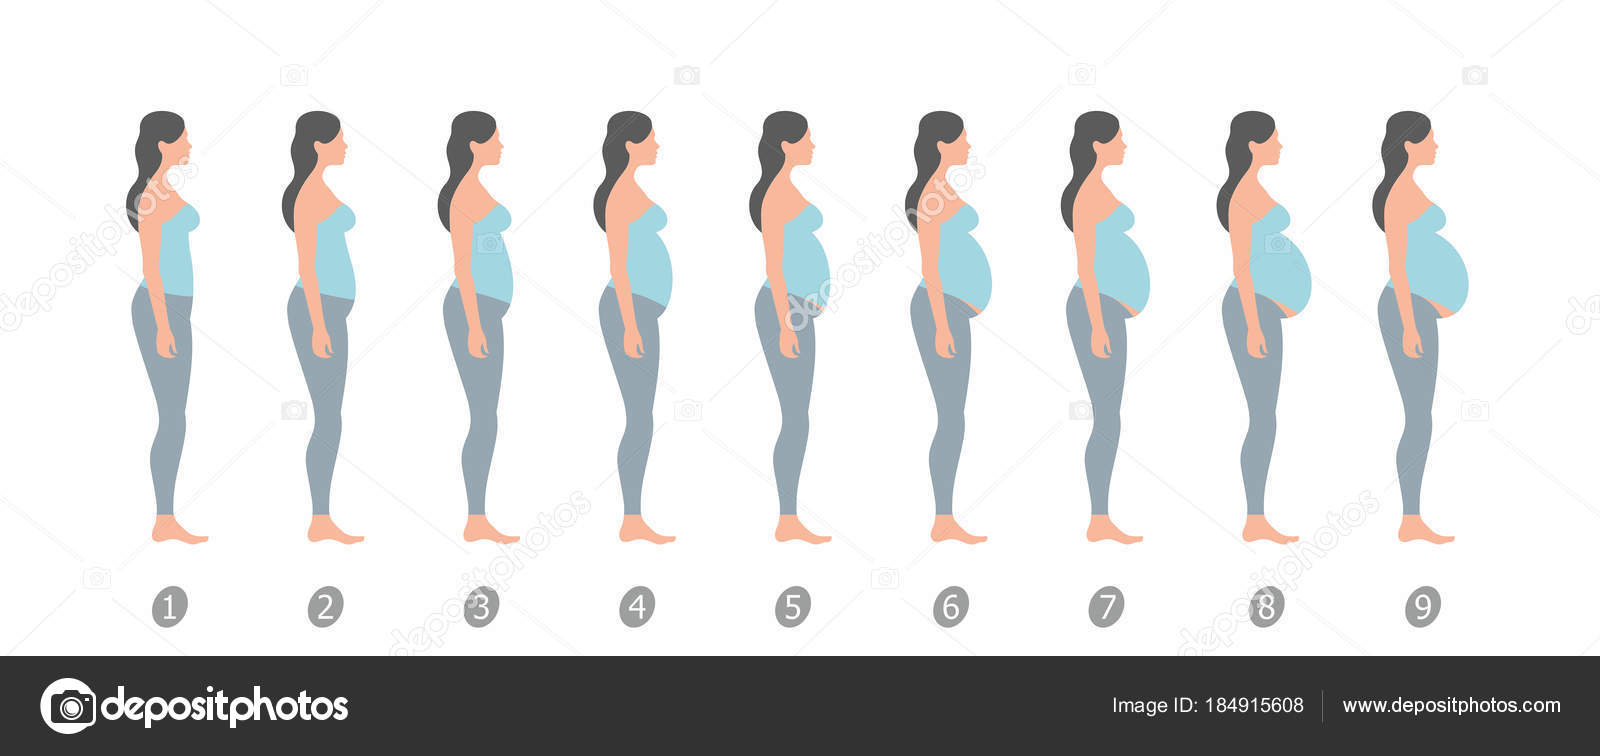 при первом месяце беременности увеличивается грудь фото 81